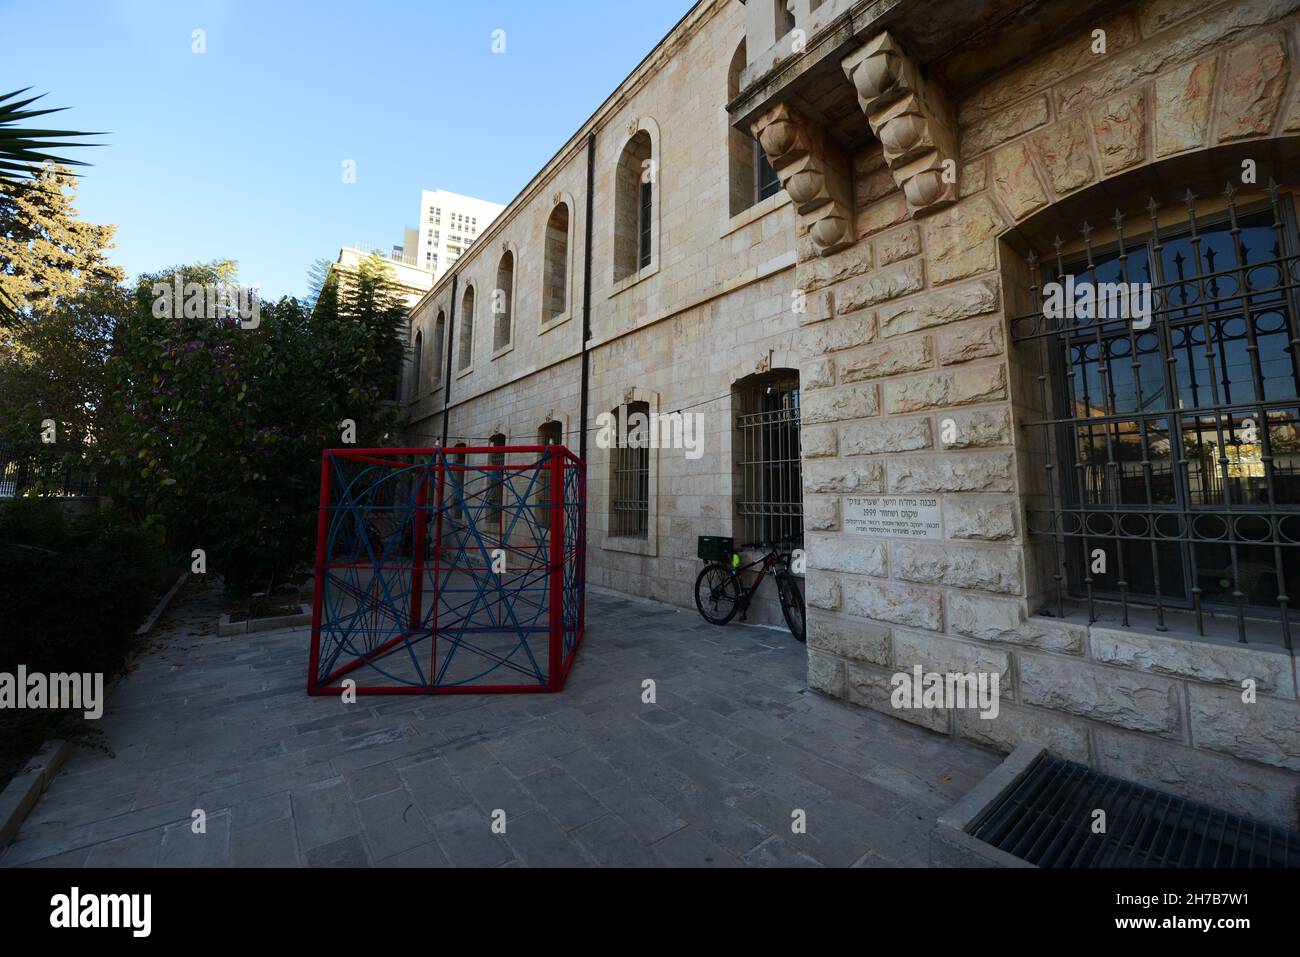 El antiguo edificio restaurado del hospital Shaare Zedek en la calle Jaffa 161 en Jerusalén, Israel. Foto de stock